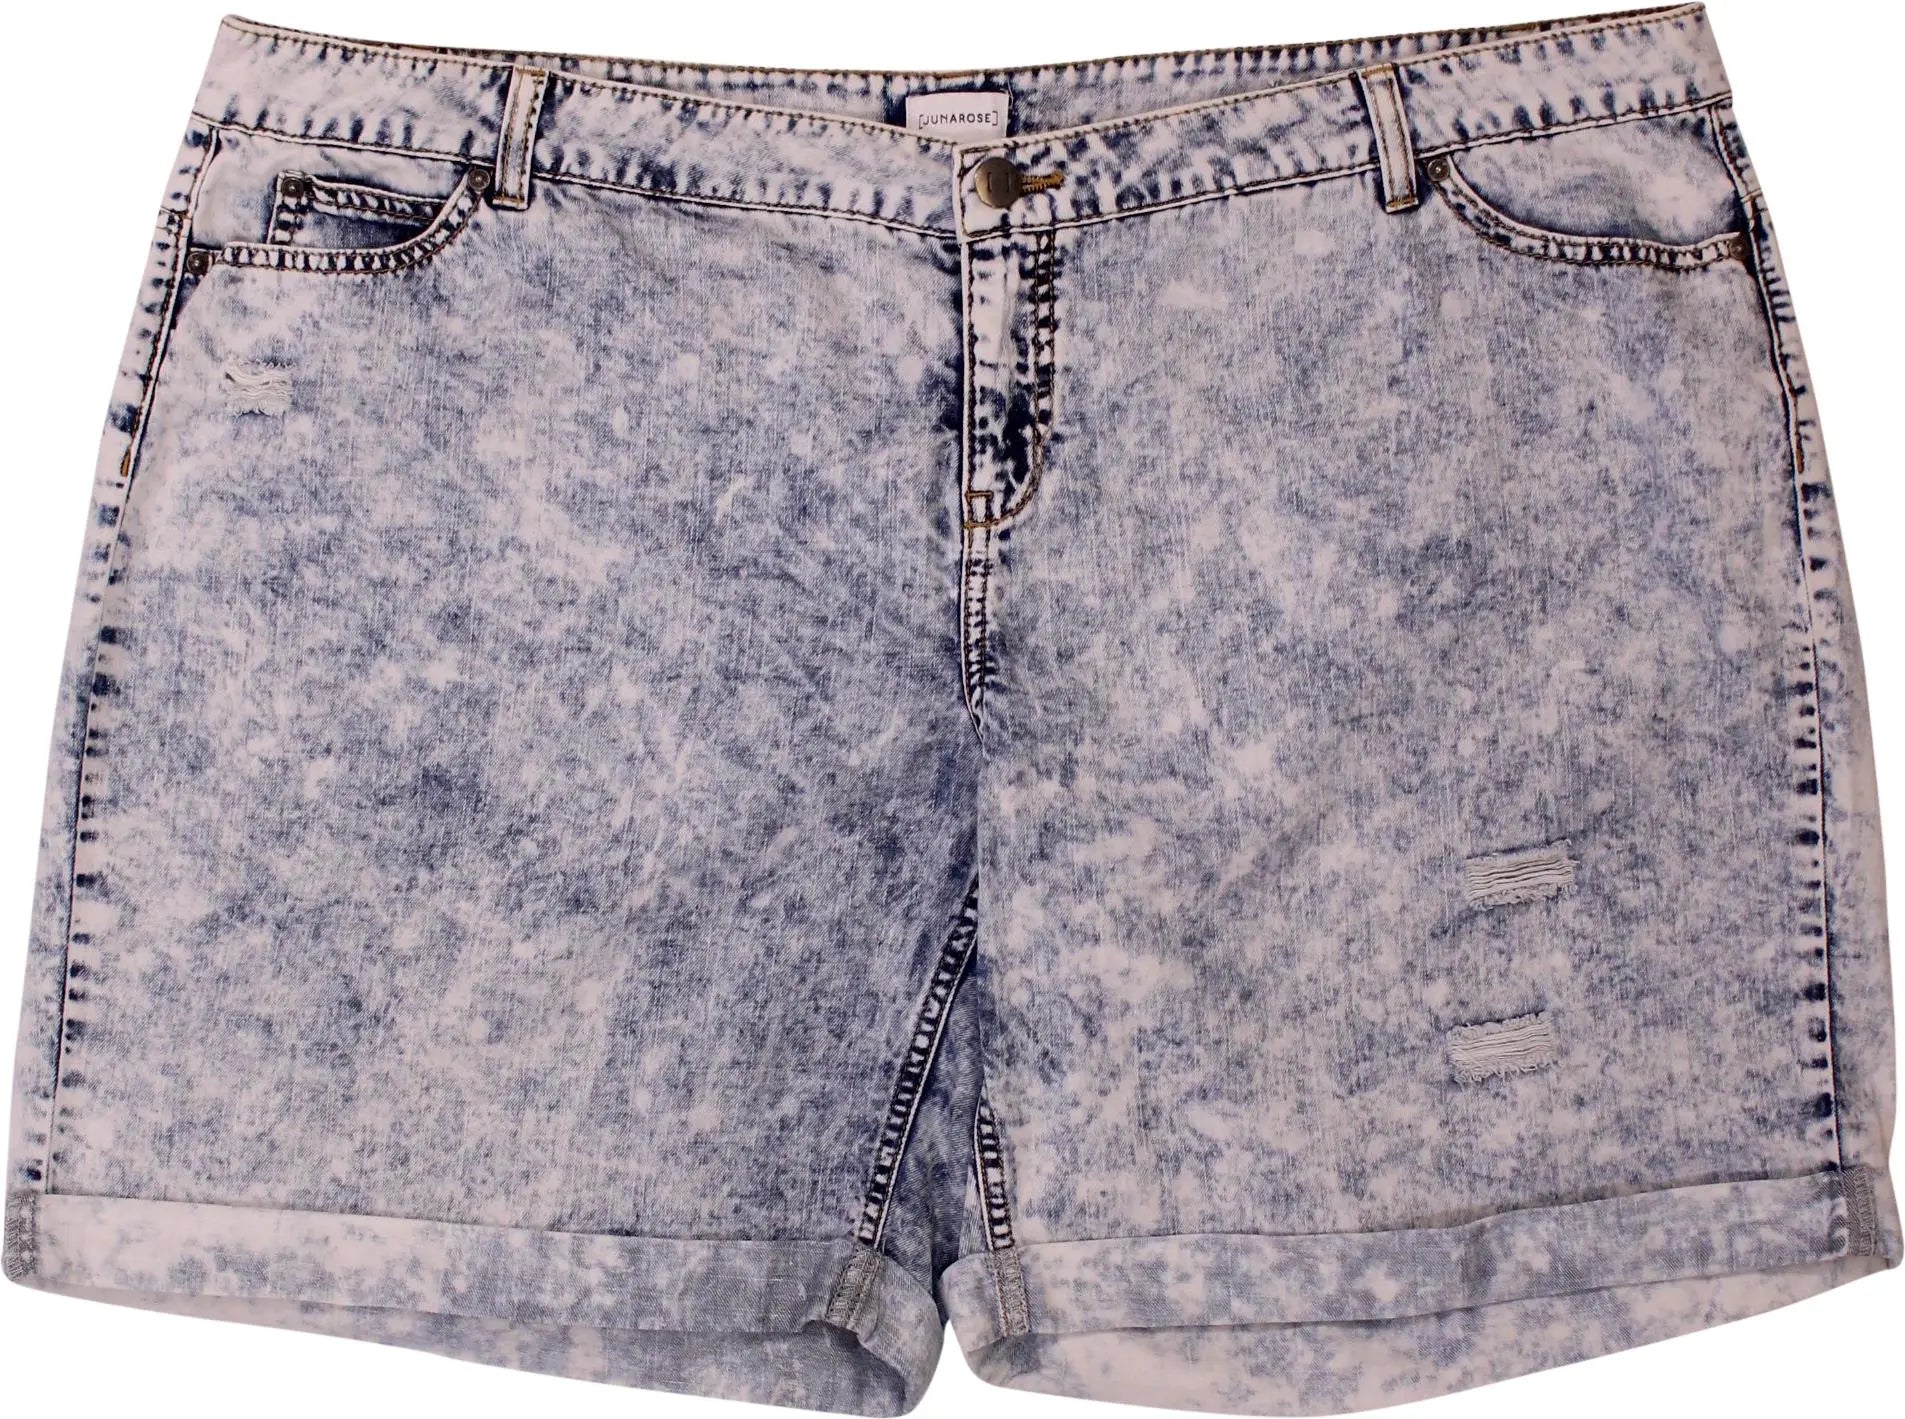 Junarose - Denim Acid Wash Shorts- ThriftTale.com - Vintage and second handclothing